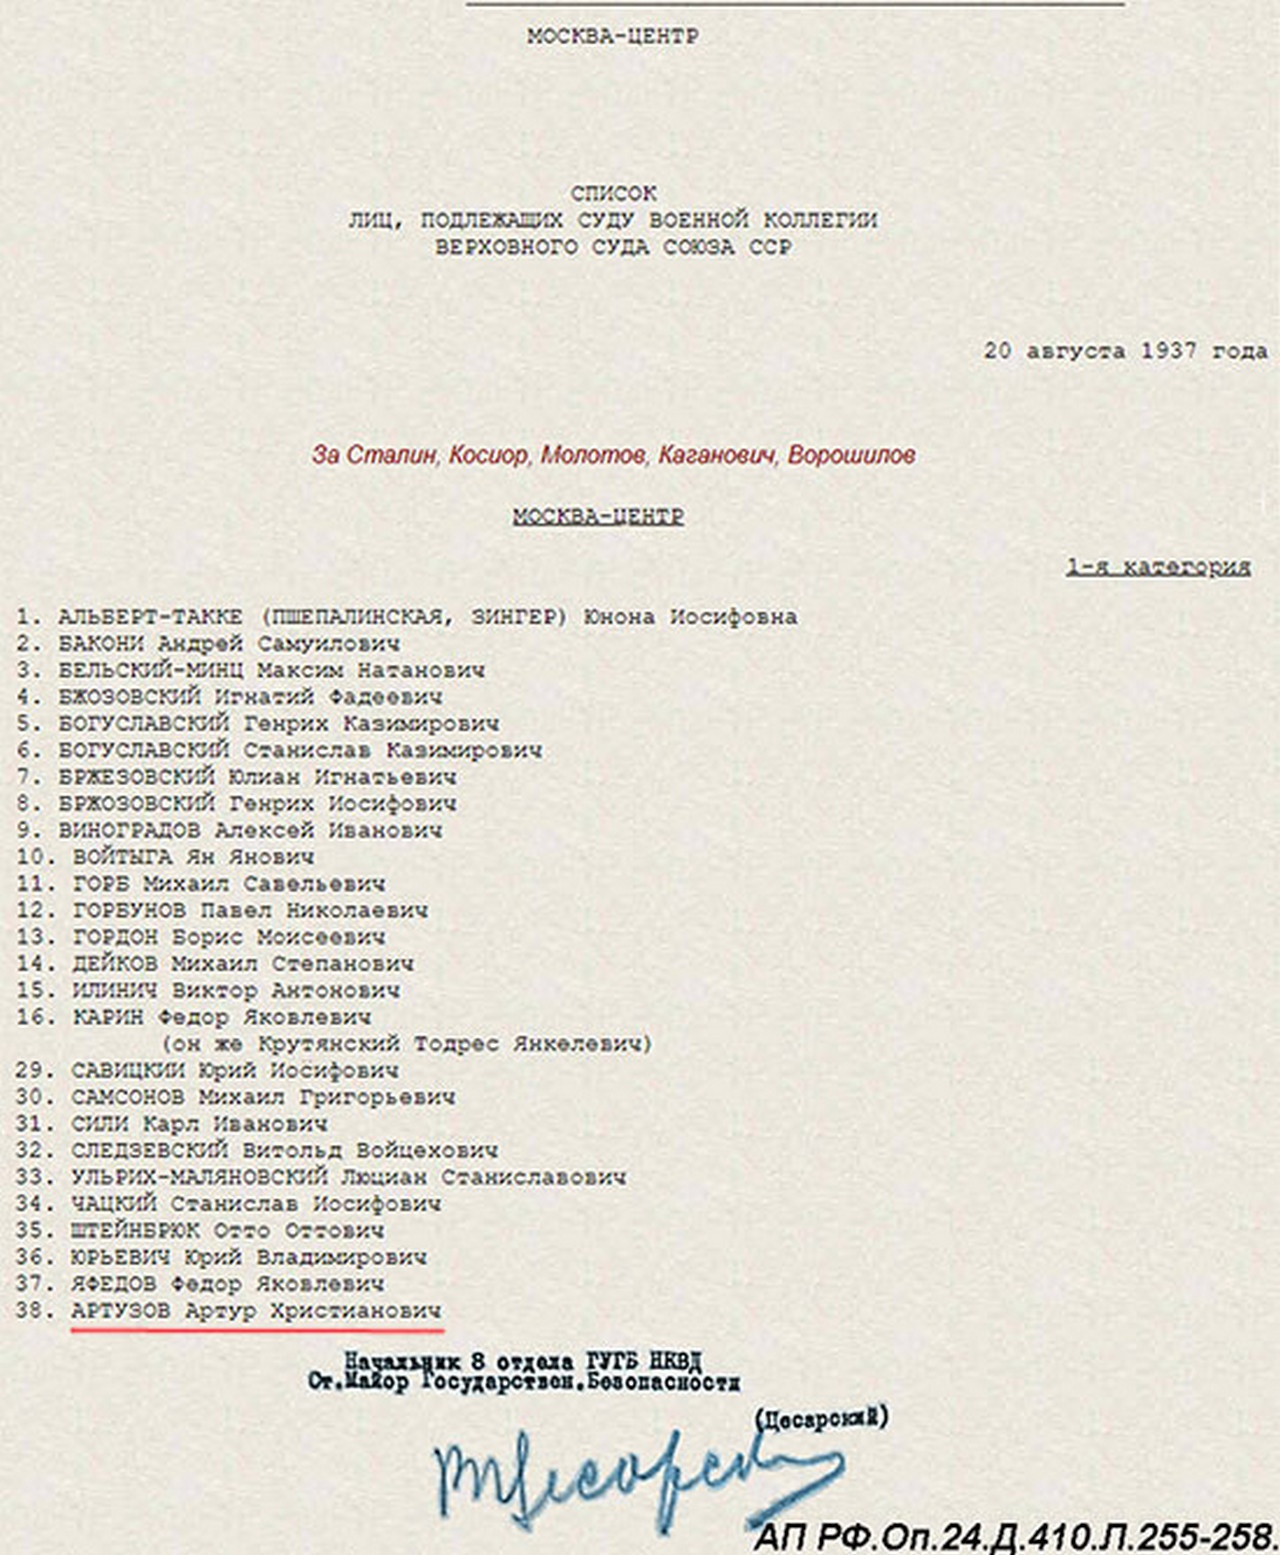 Список лиц, подлежащих суду Военной коллегии Верховного Суда Союза ССР.